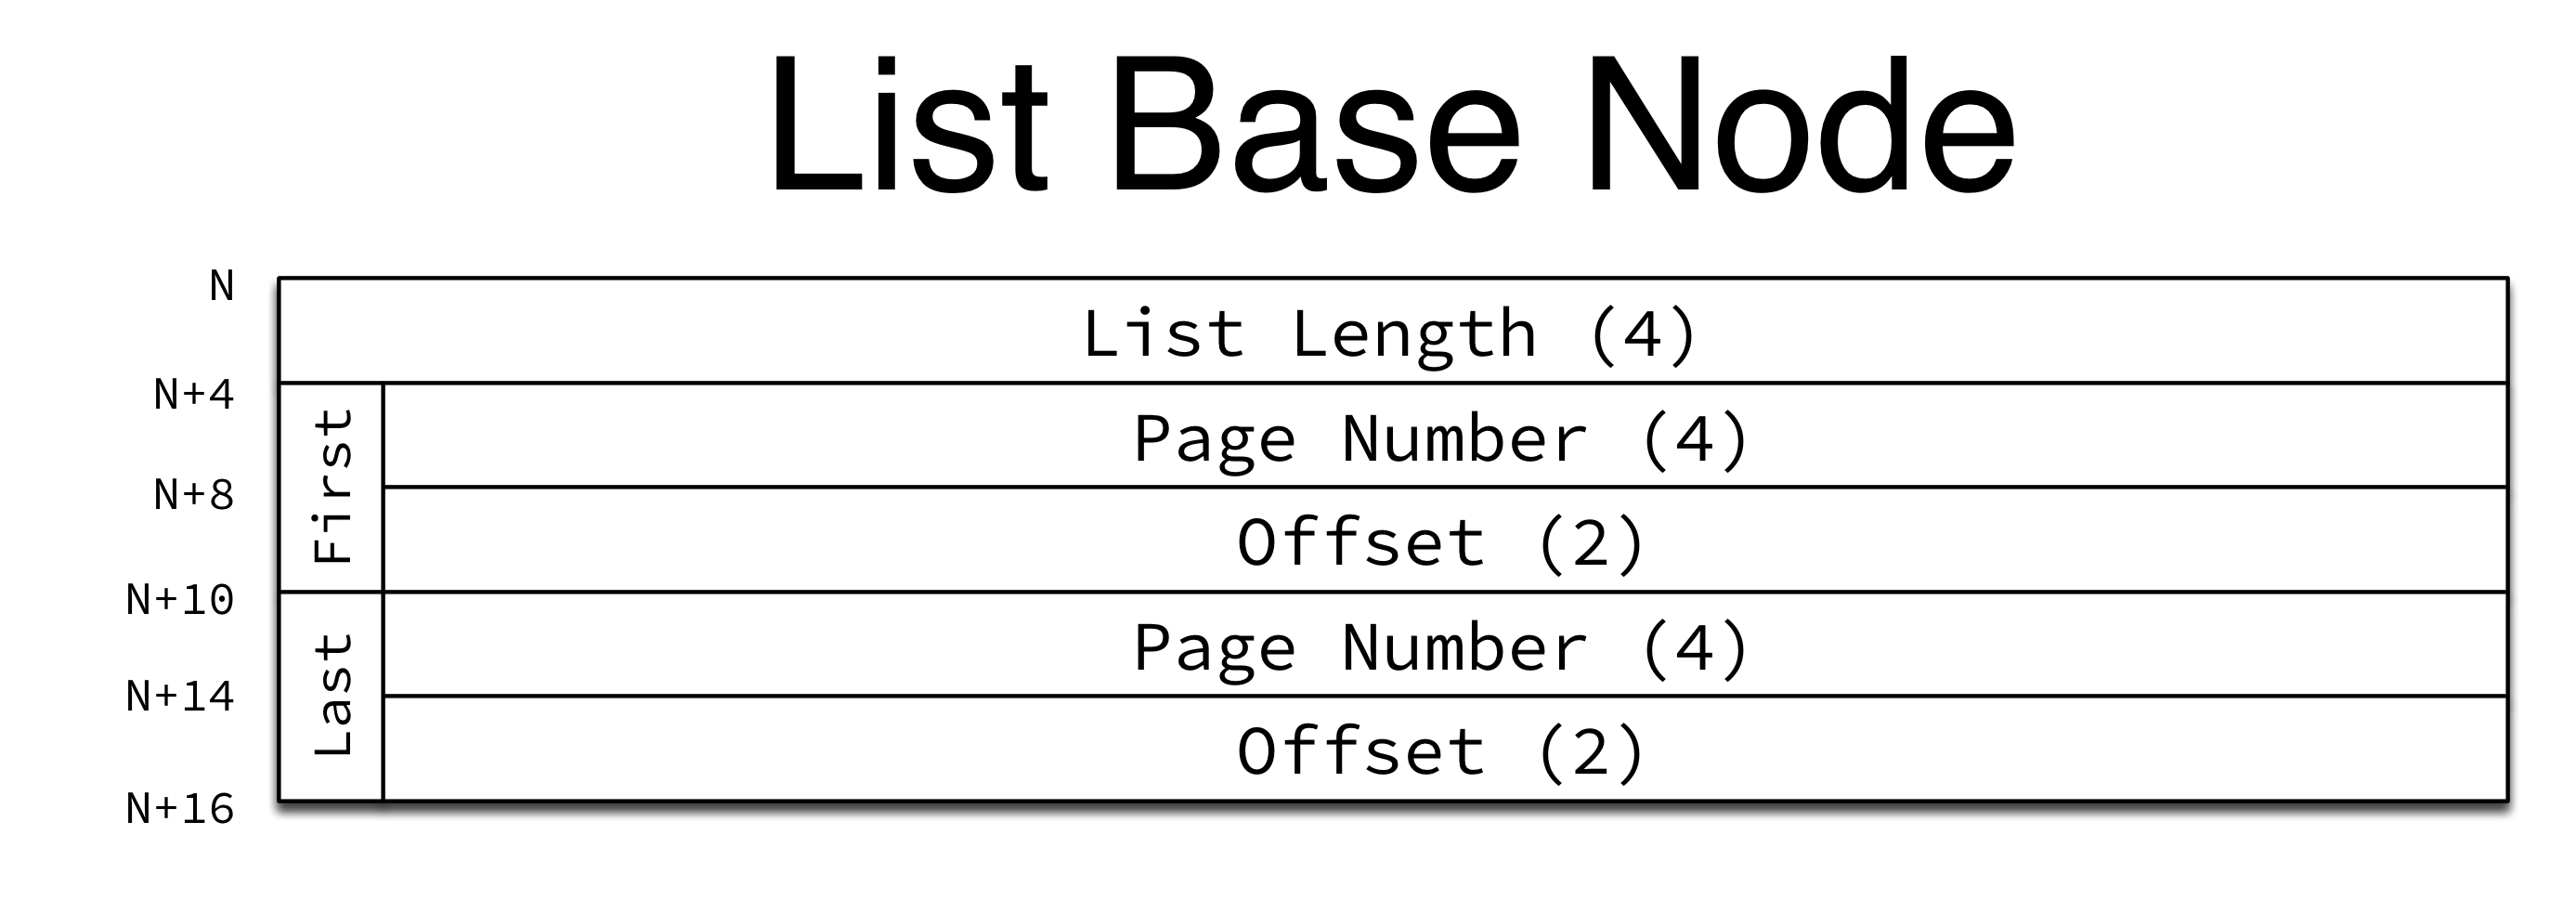 List Base Nodes